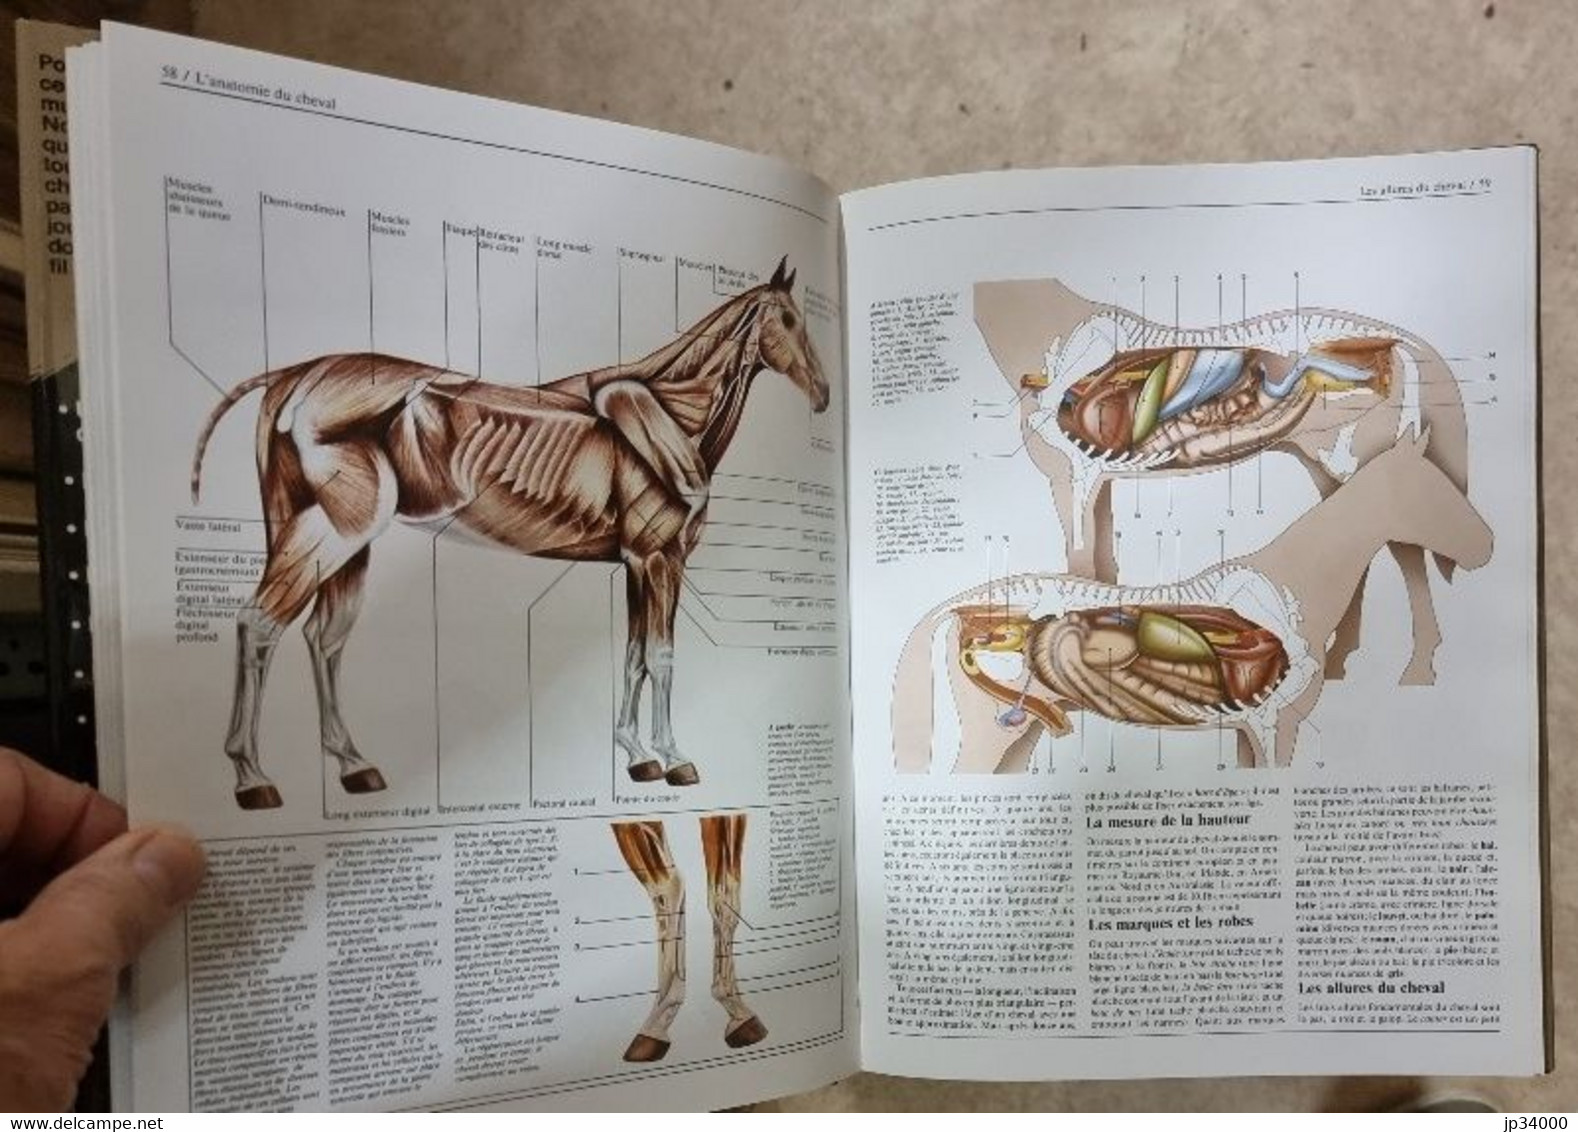 La grande encyclopédie du cheval. Editions Bordas. Très bon état